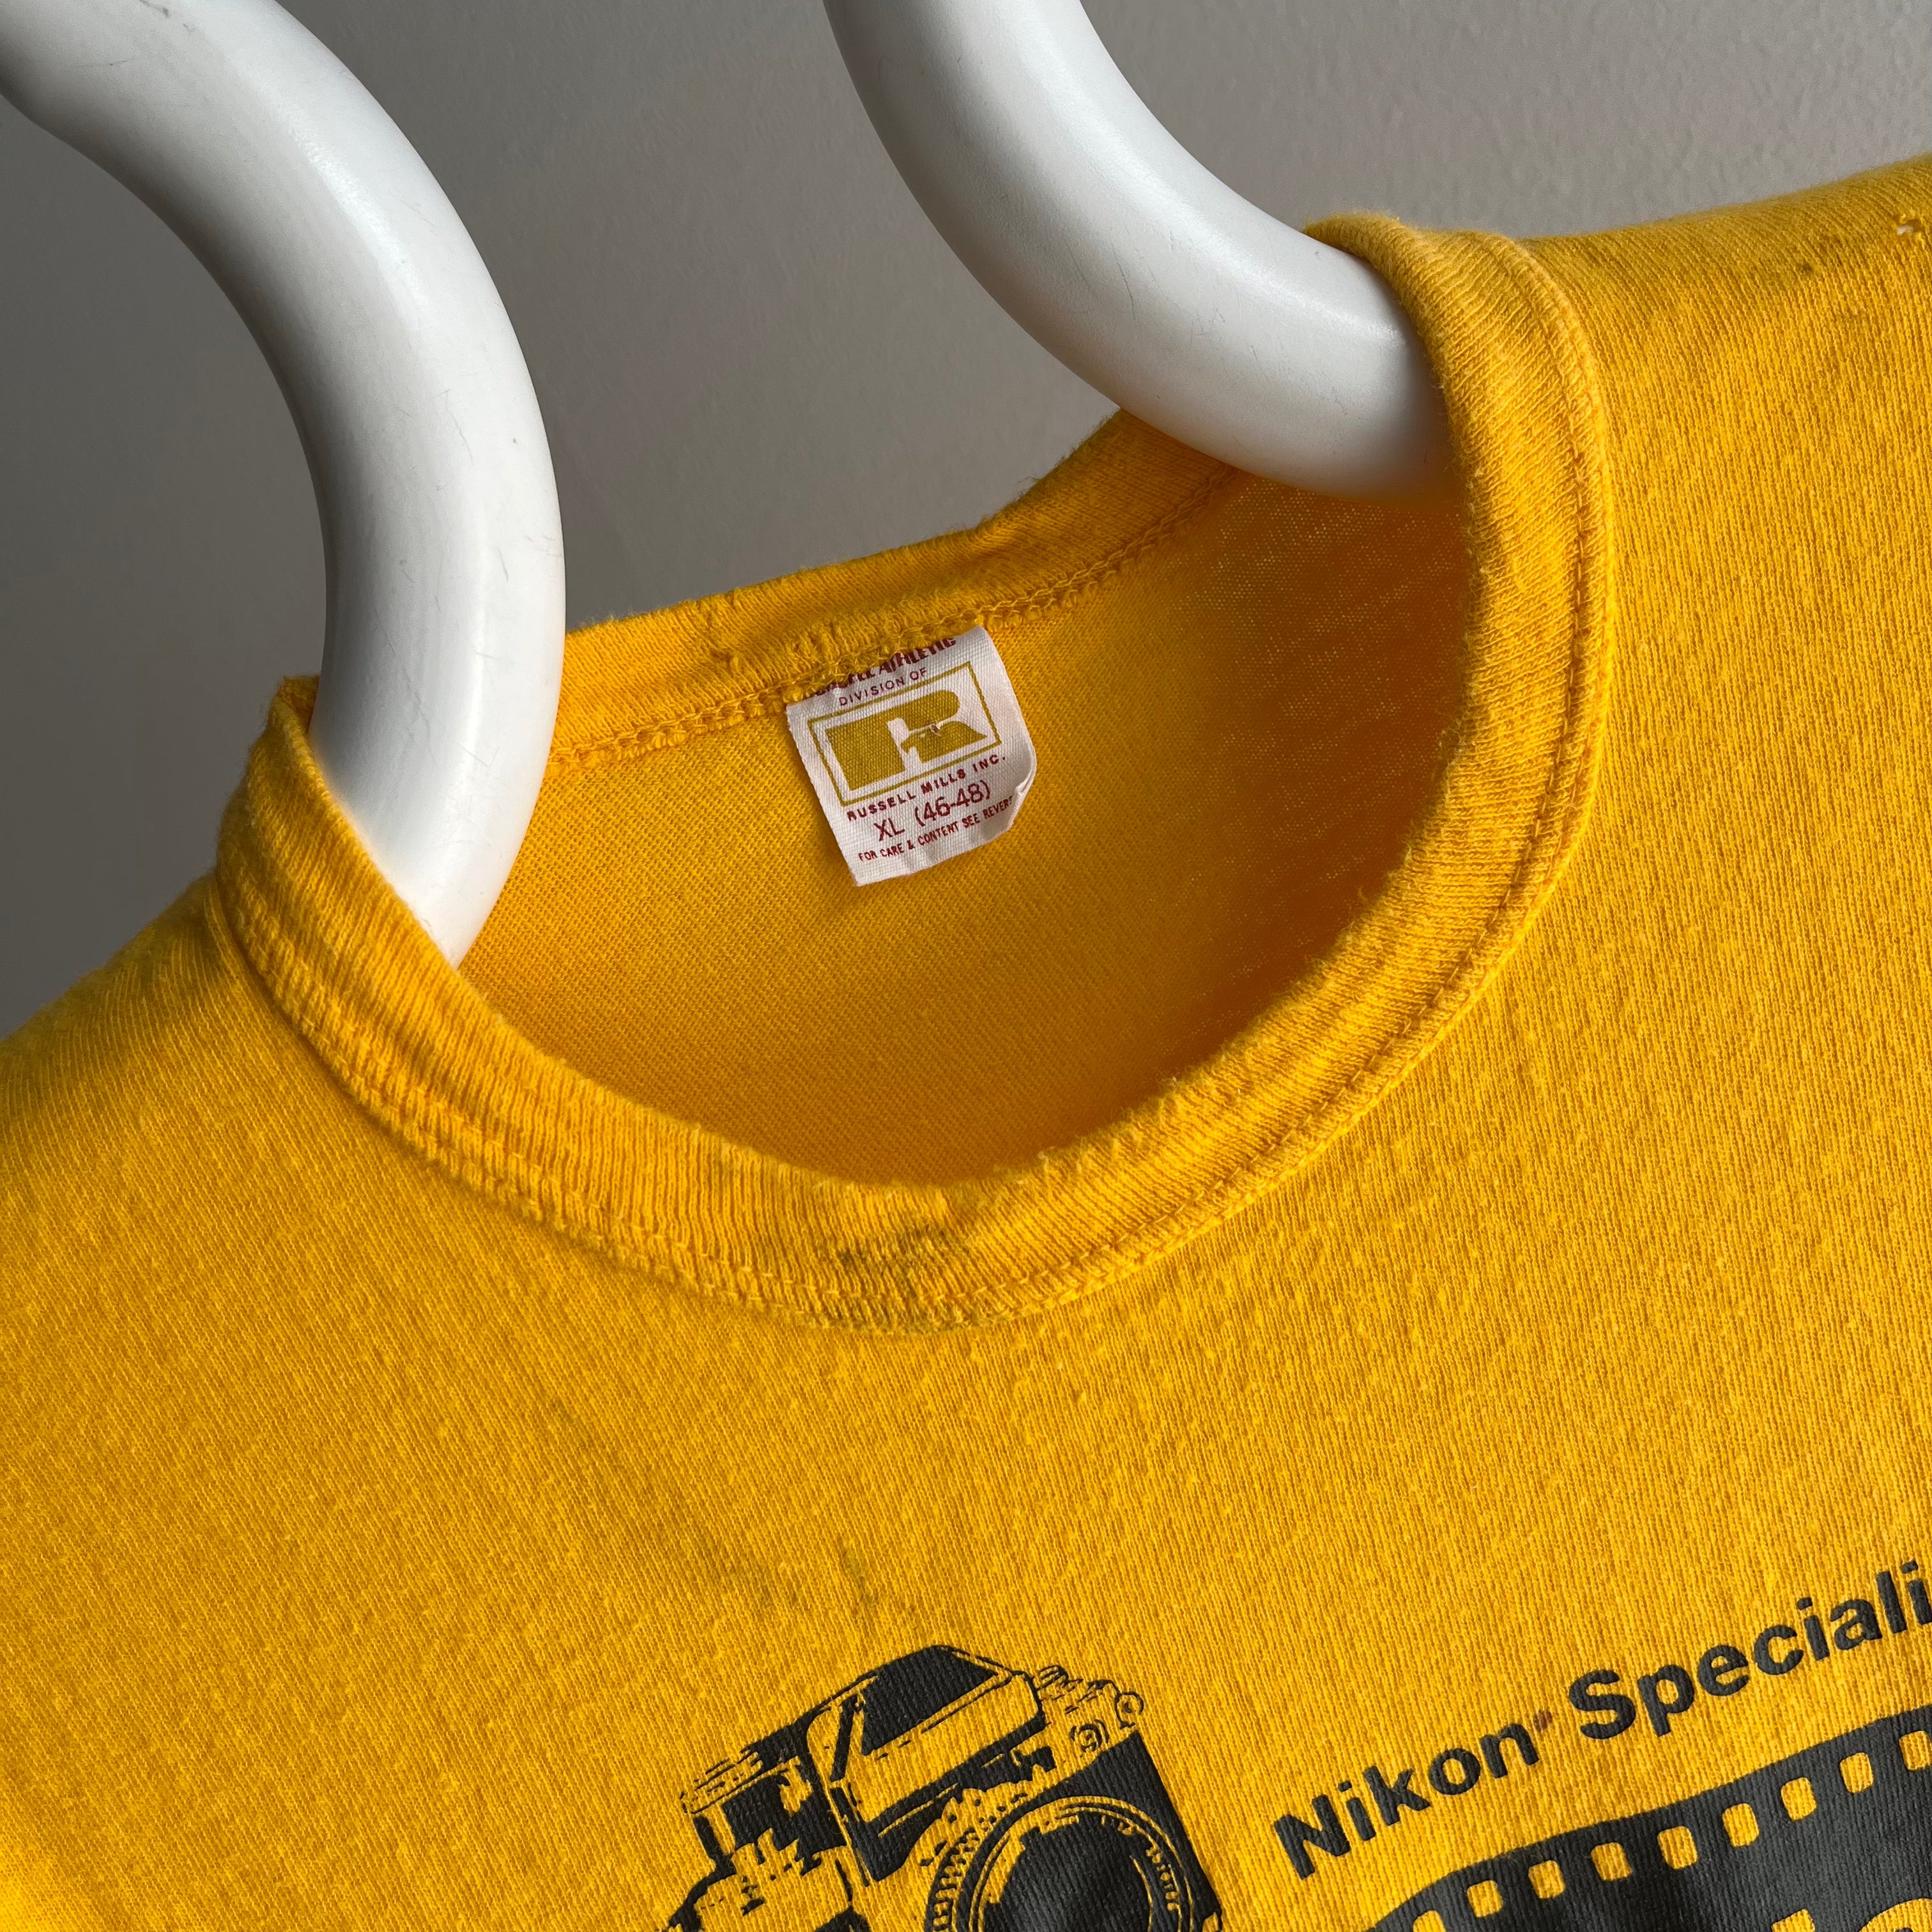 T-shirt à col roulé en coton Nikon Specialist Photo Alliance des années 1970 par Russell Brand !!